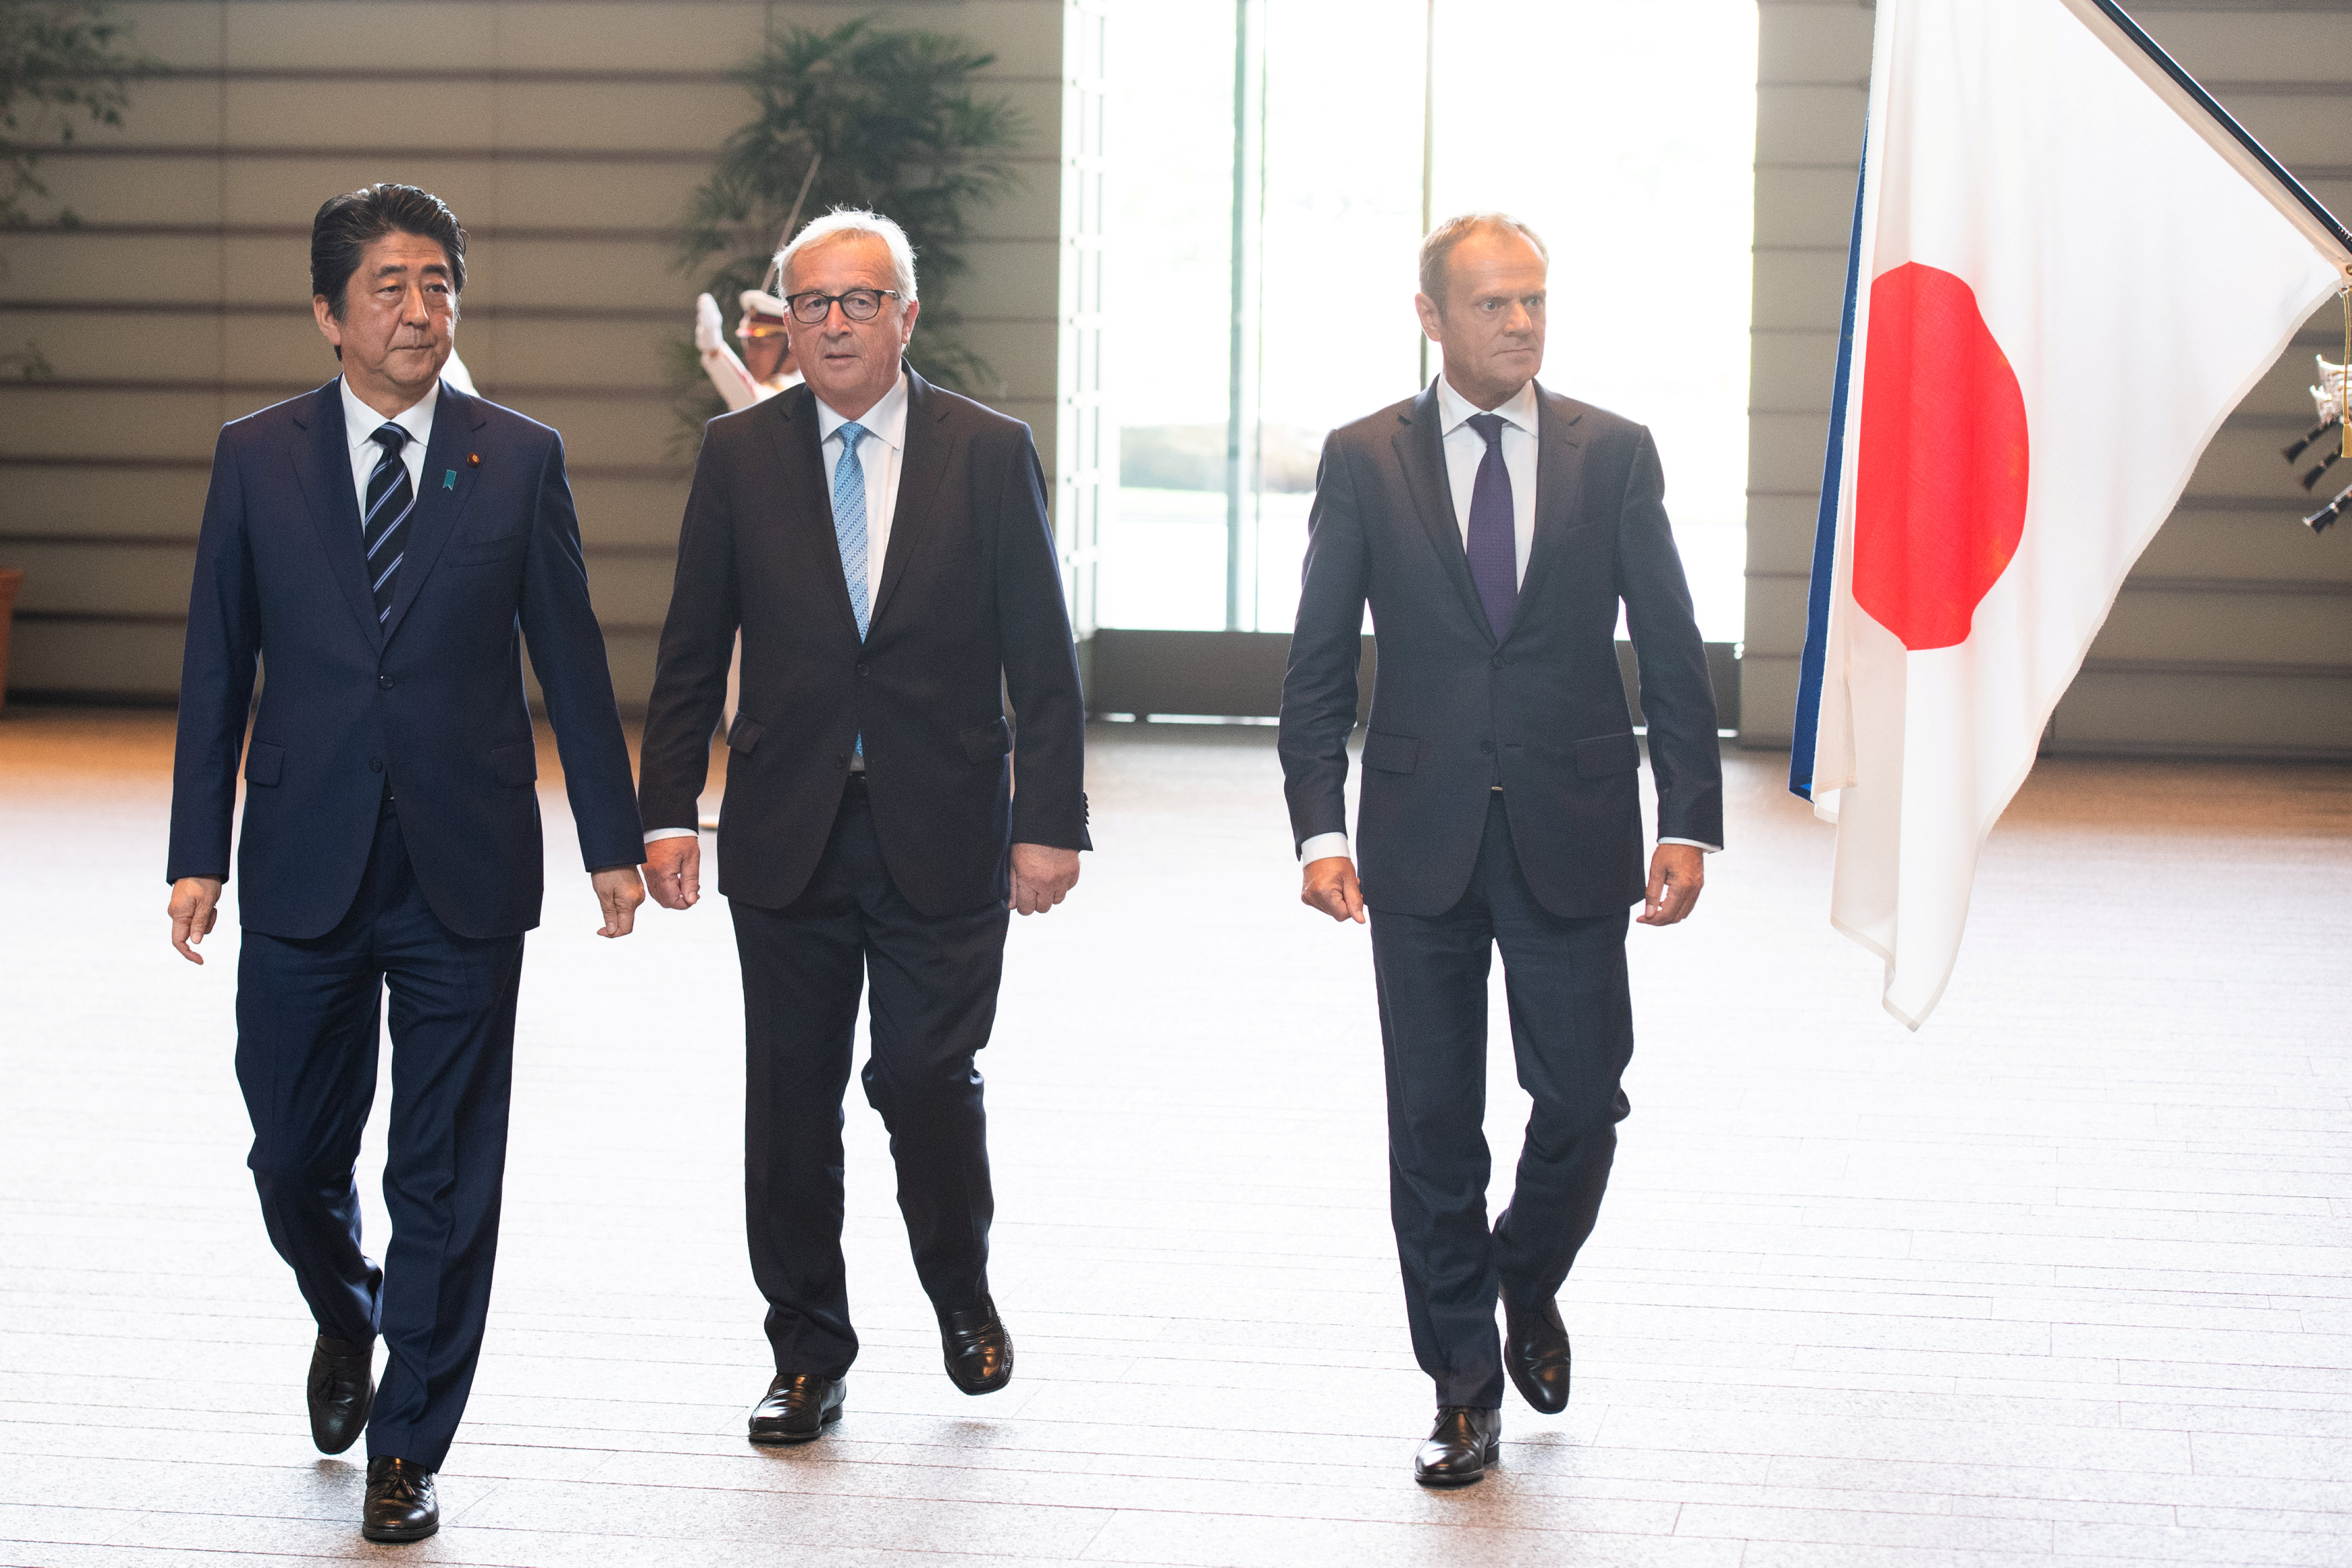 رئيس وزراء اليابان مع مسئولى الاتحاد الأوروبى